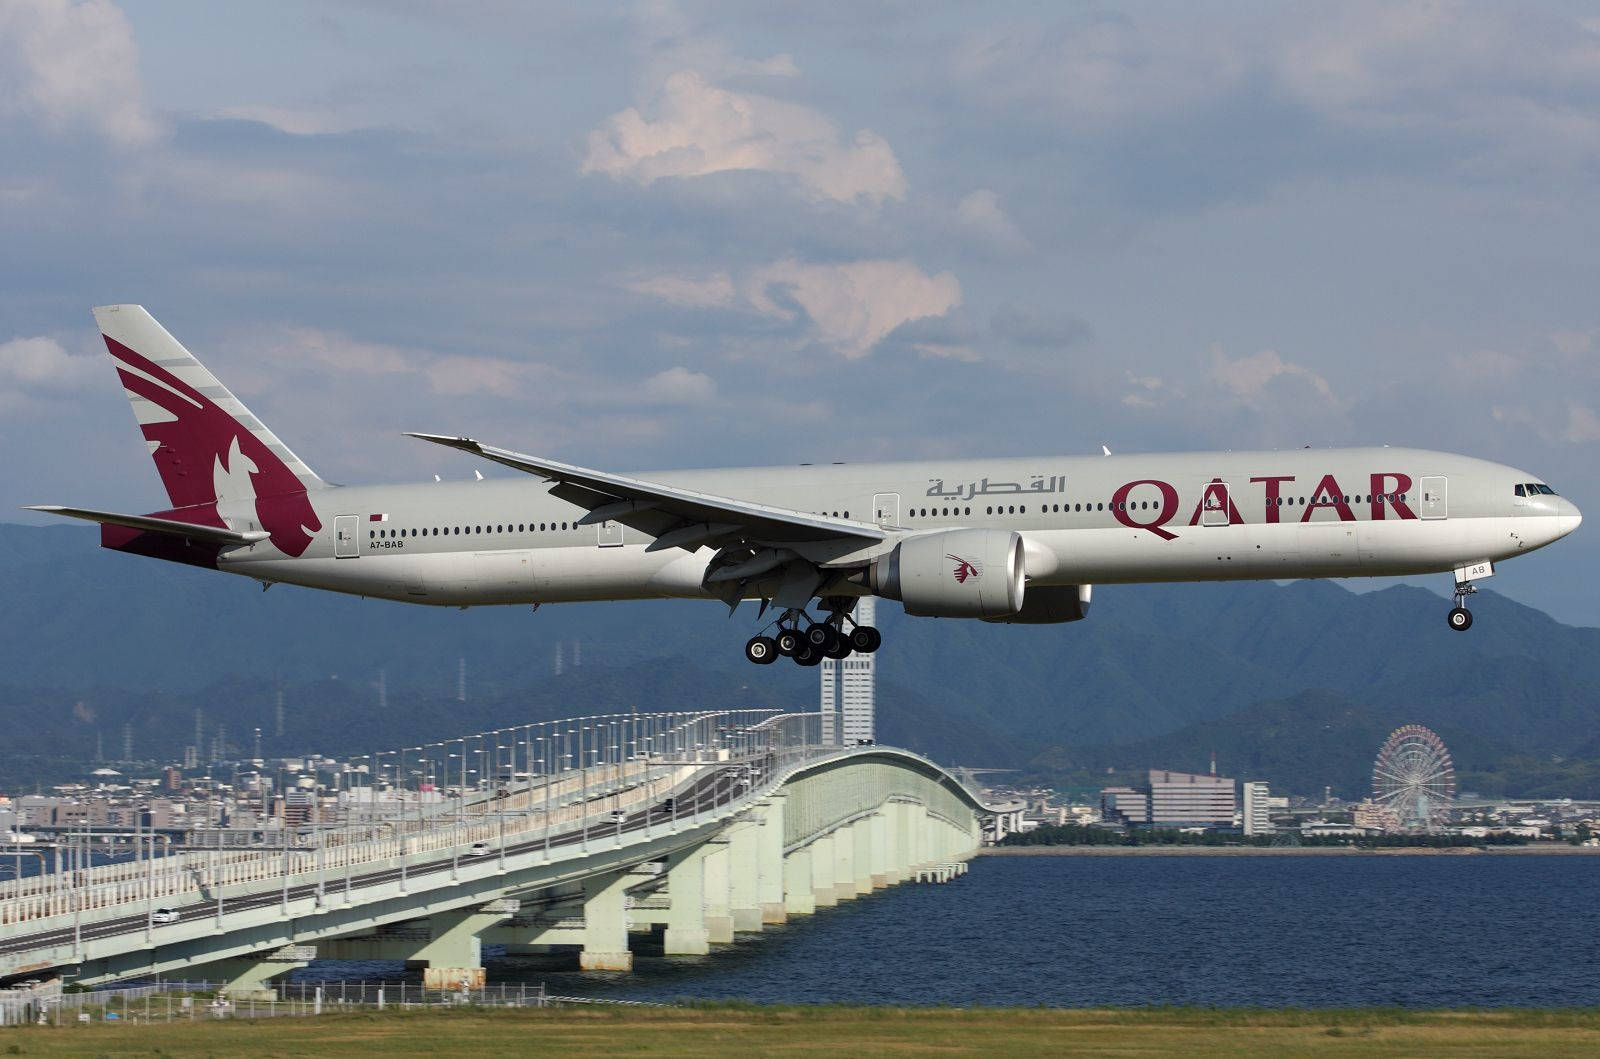 Qatar Airways In The Air Wallpaper